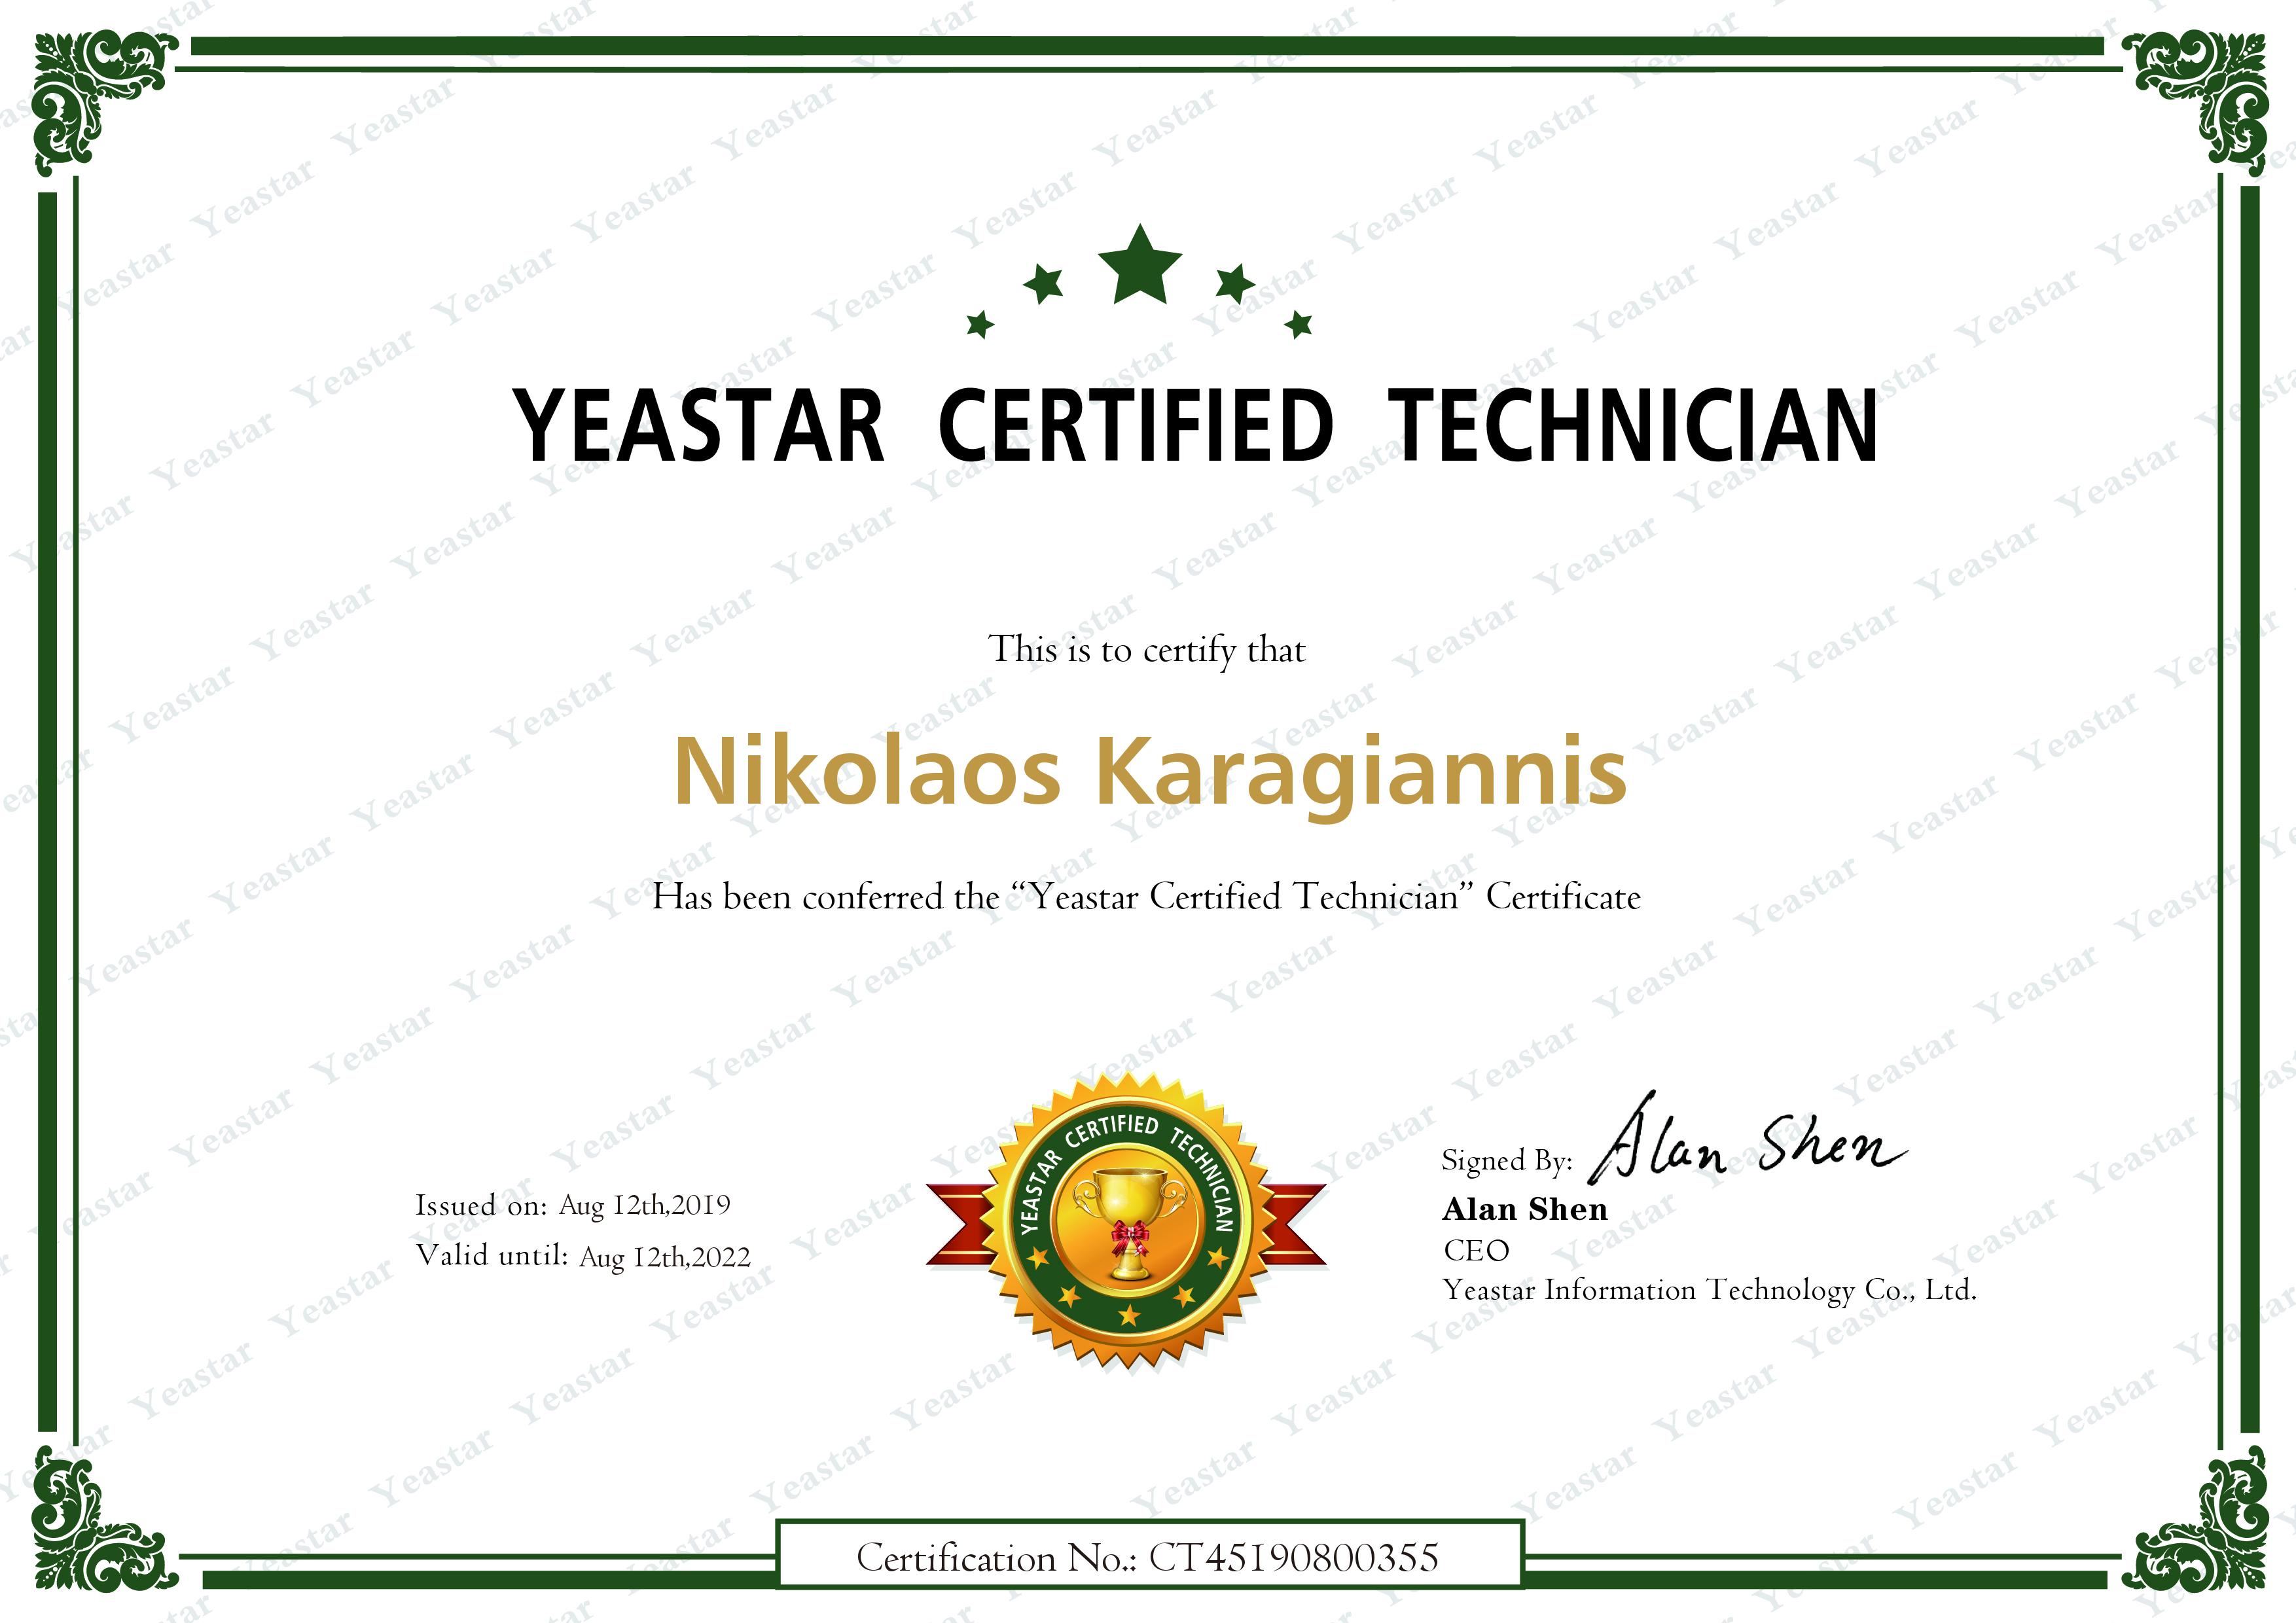 yeastar certified technician karagiannis security